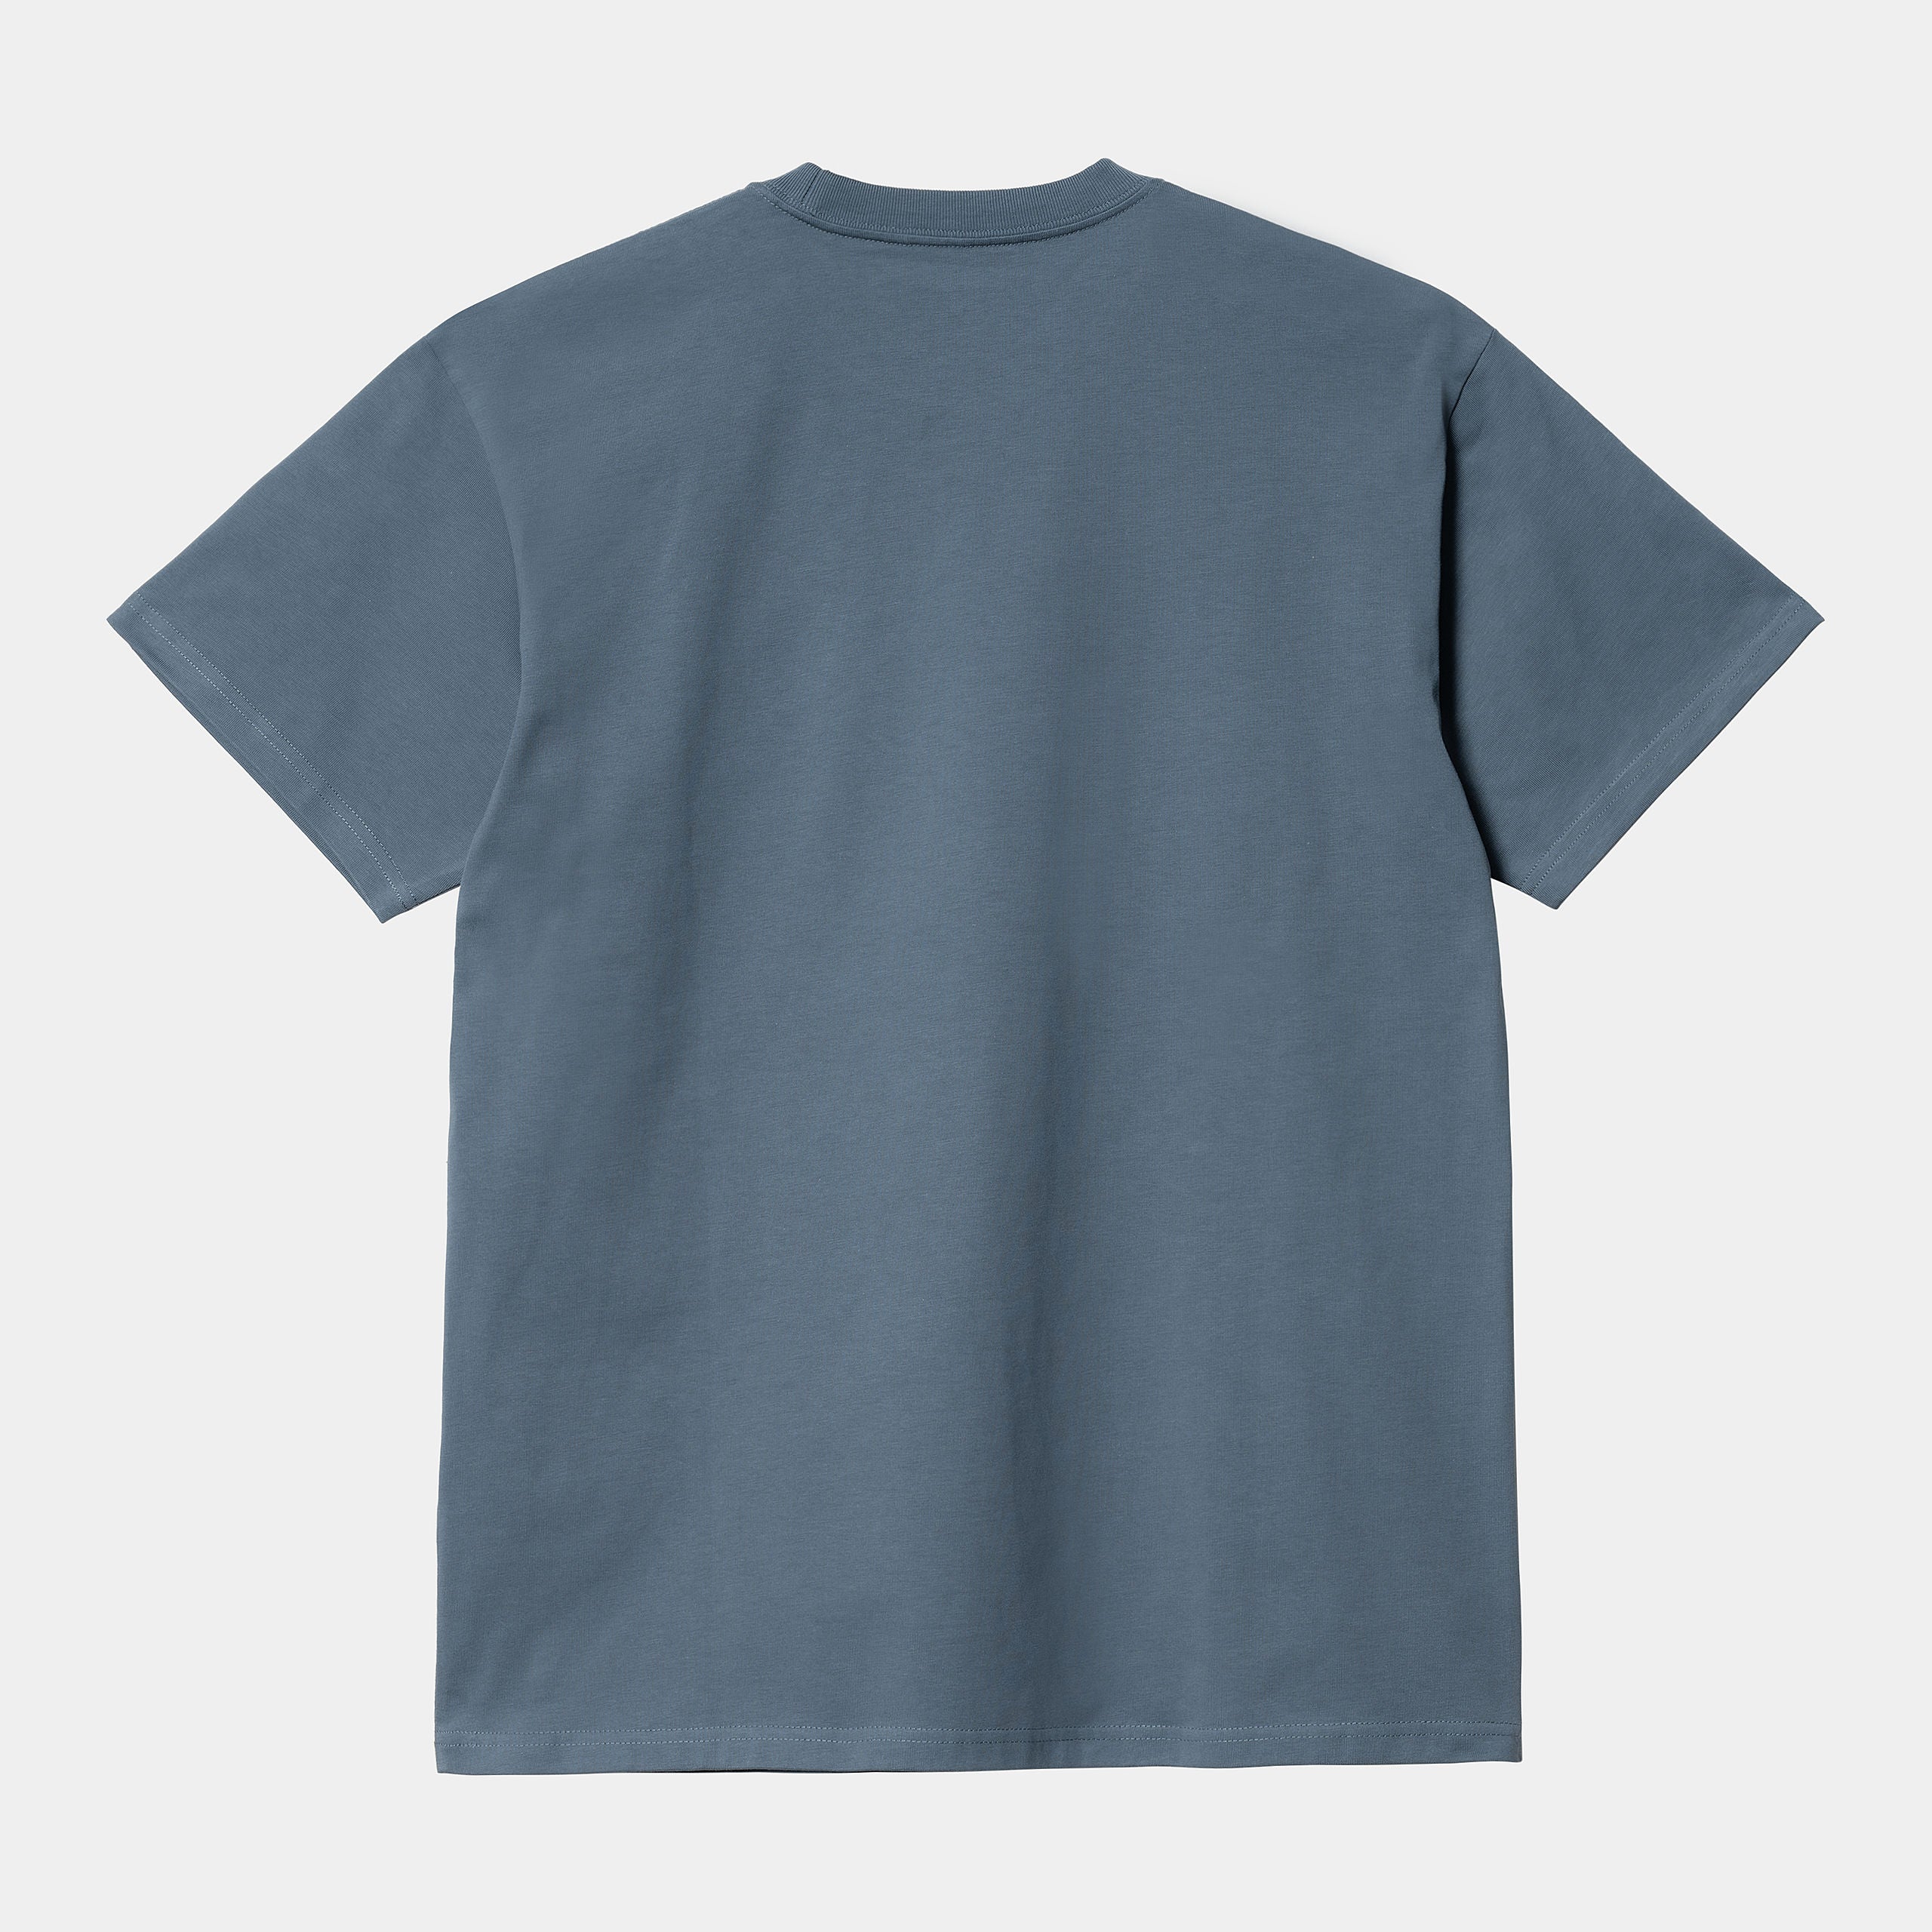 T-Shirt von Carhartt WIP mit gestickter kleiner Carhartt Welle auf der Brust in Farbe Blaugrau.